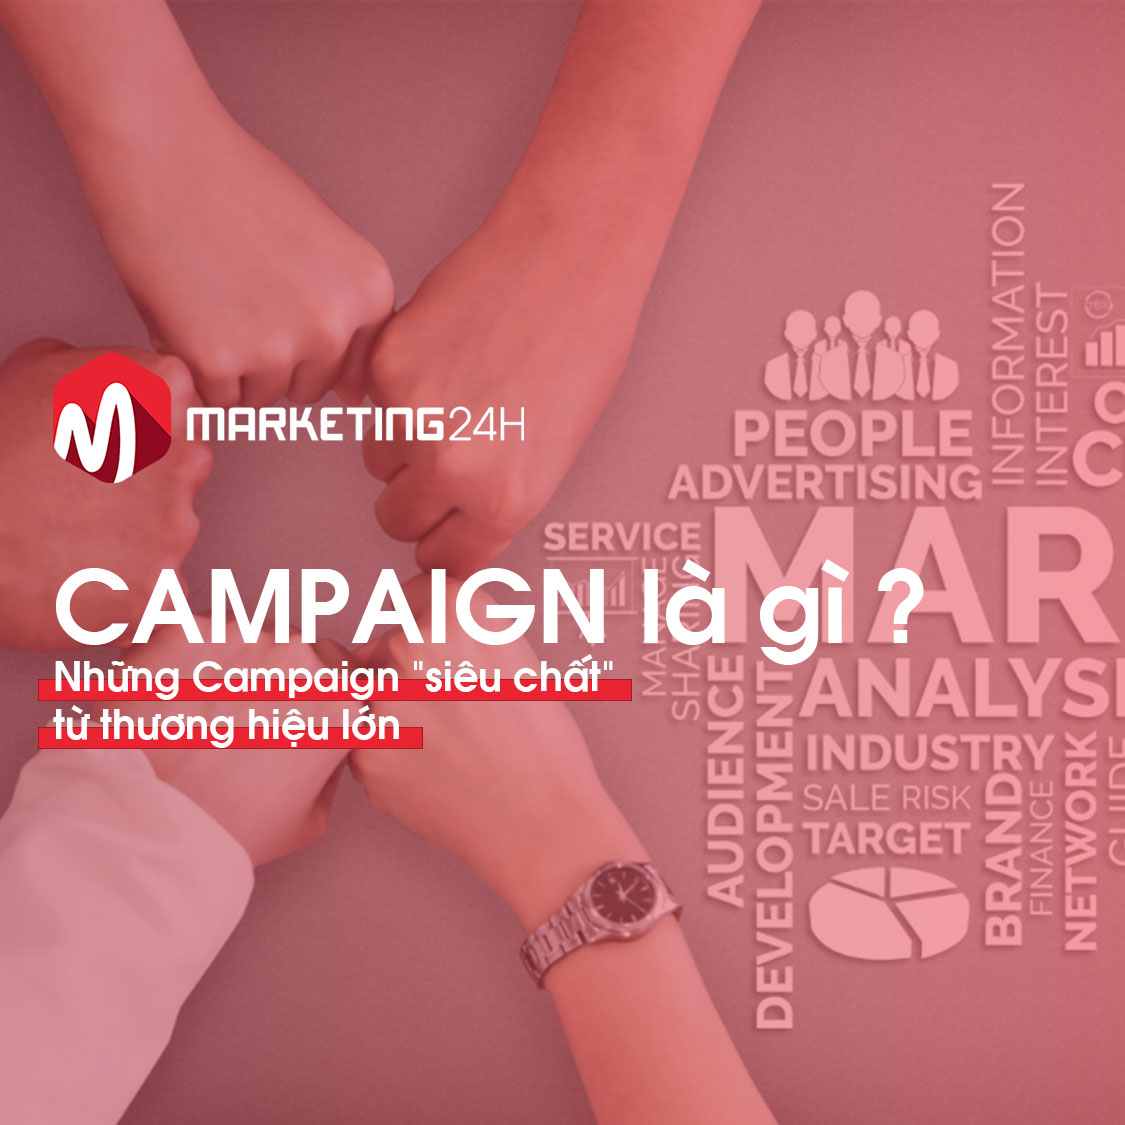 Campaign là gì? Những Campaign “siêu chất” từ thương hiệu lớn